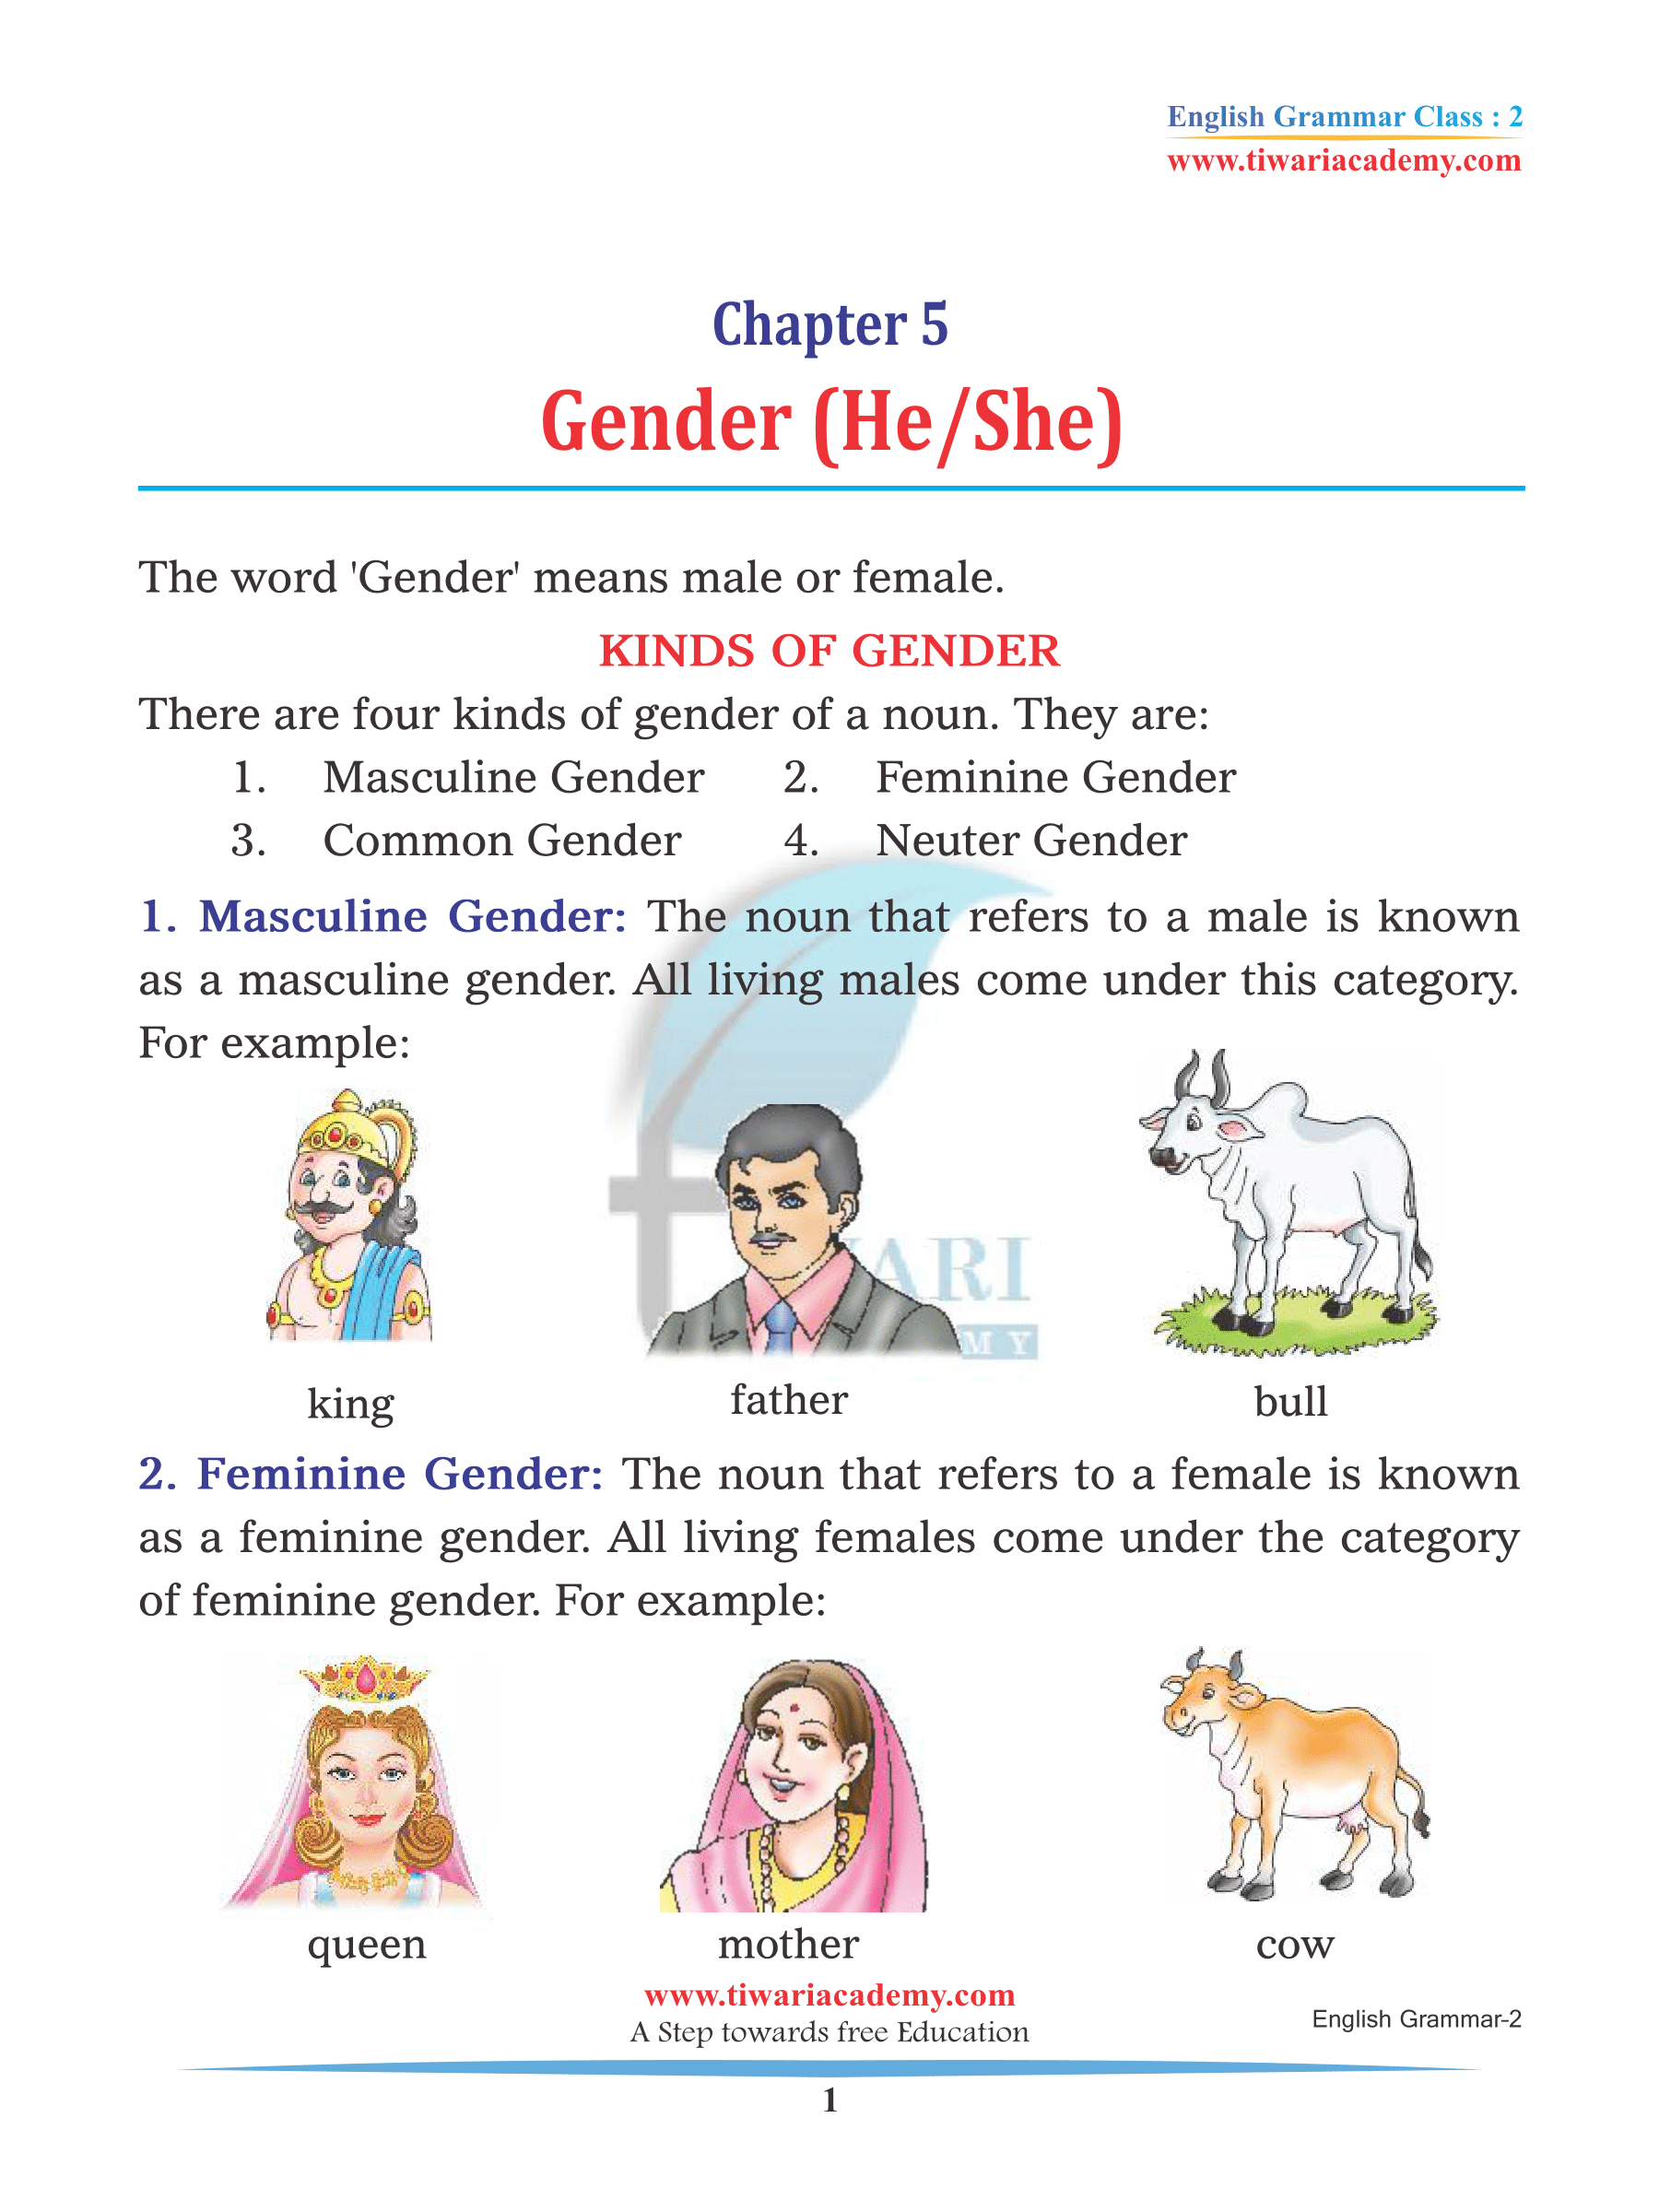 Class 2 English Grammar Chapter 5 Gender assignments